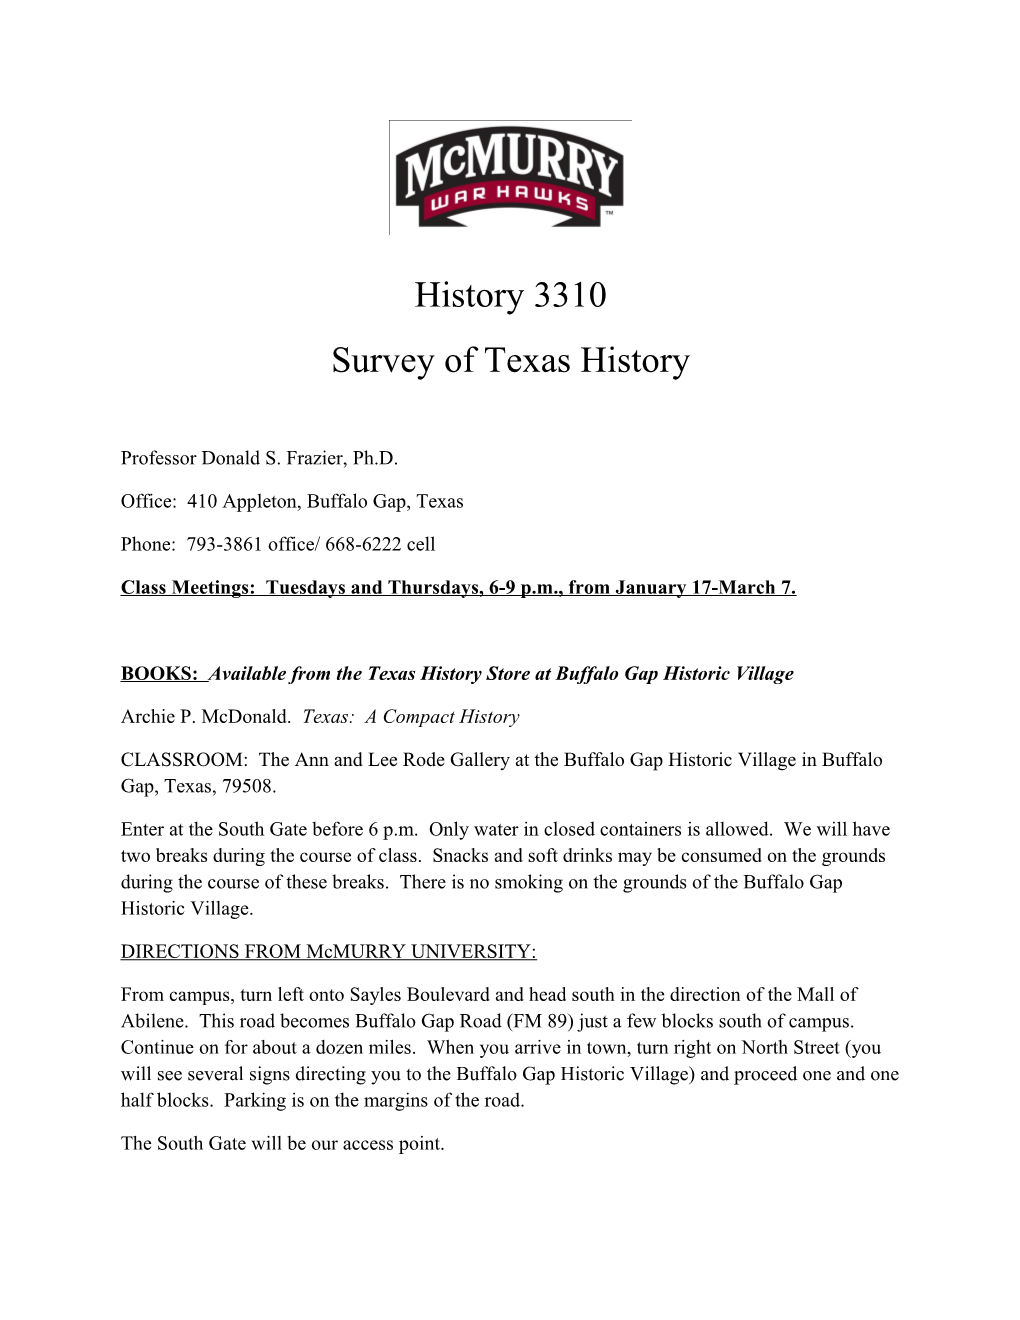 Survey of Texas History